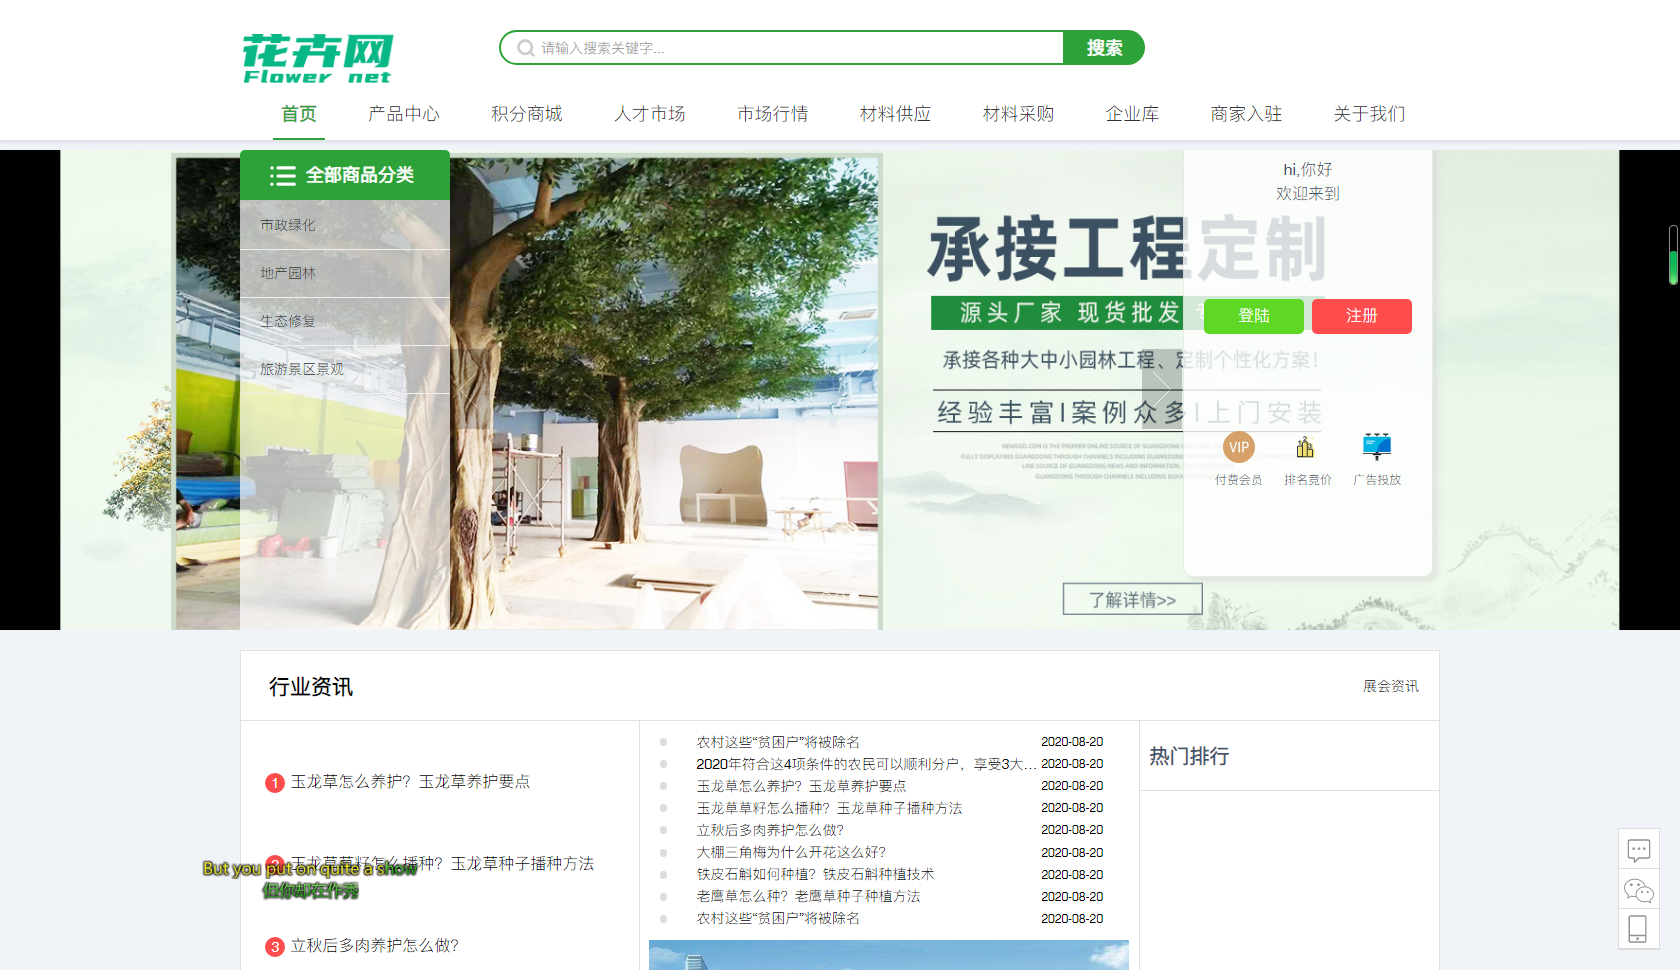 营销时代 推广就现在 花卉网平台通过ChatGPT中国方正助力中小企业经济复苏